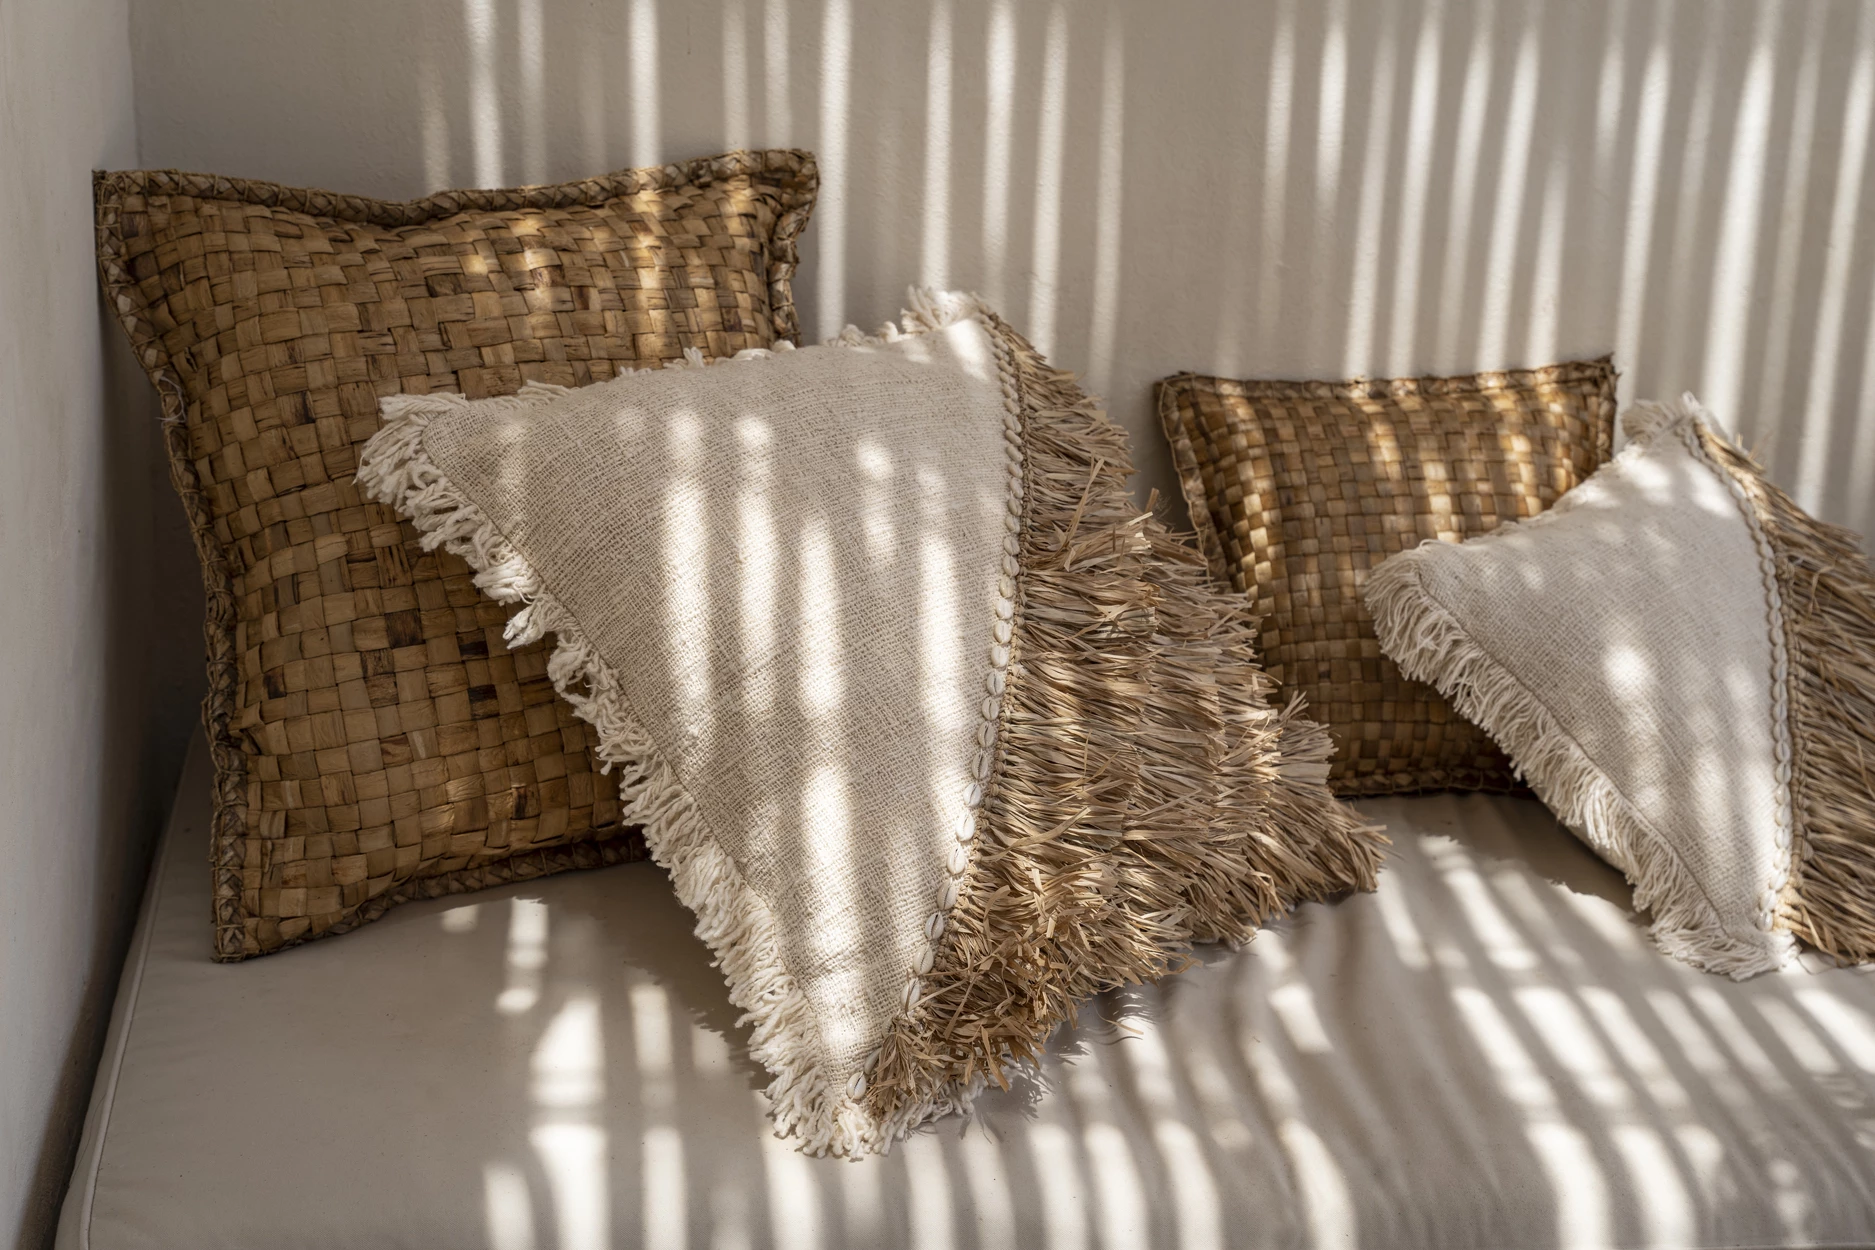 Kissenbezug aus Raffia-Baumwolle - Natur / Weiß - 60x60